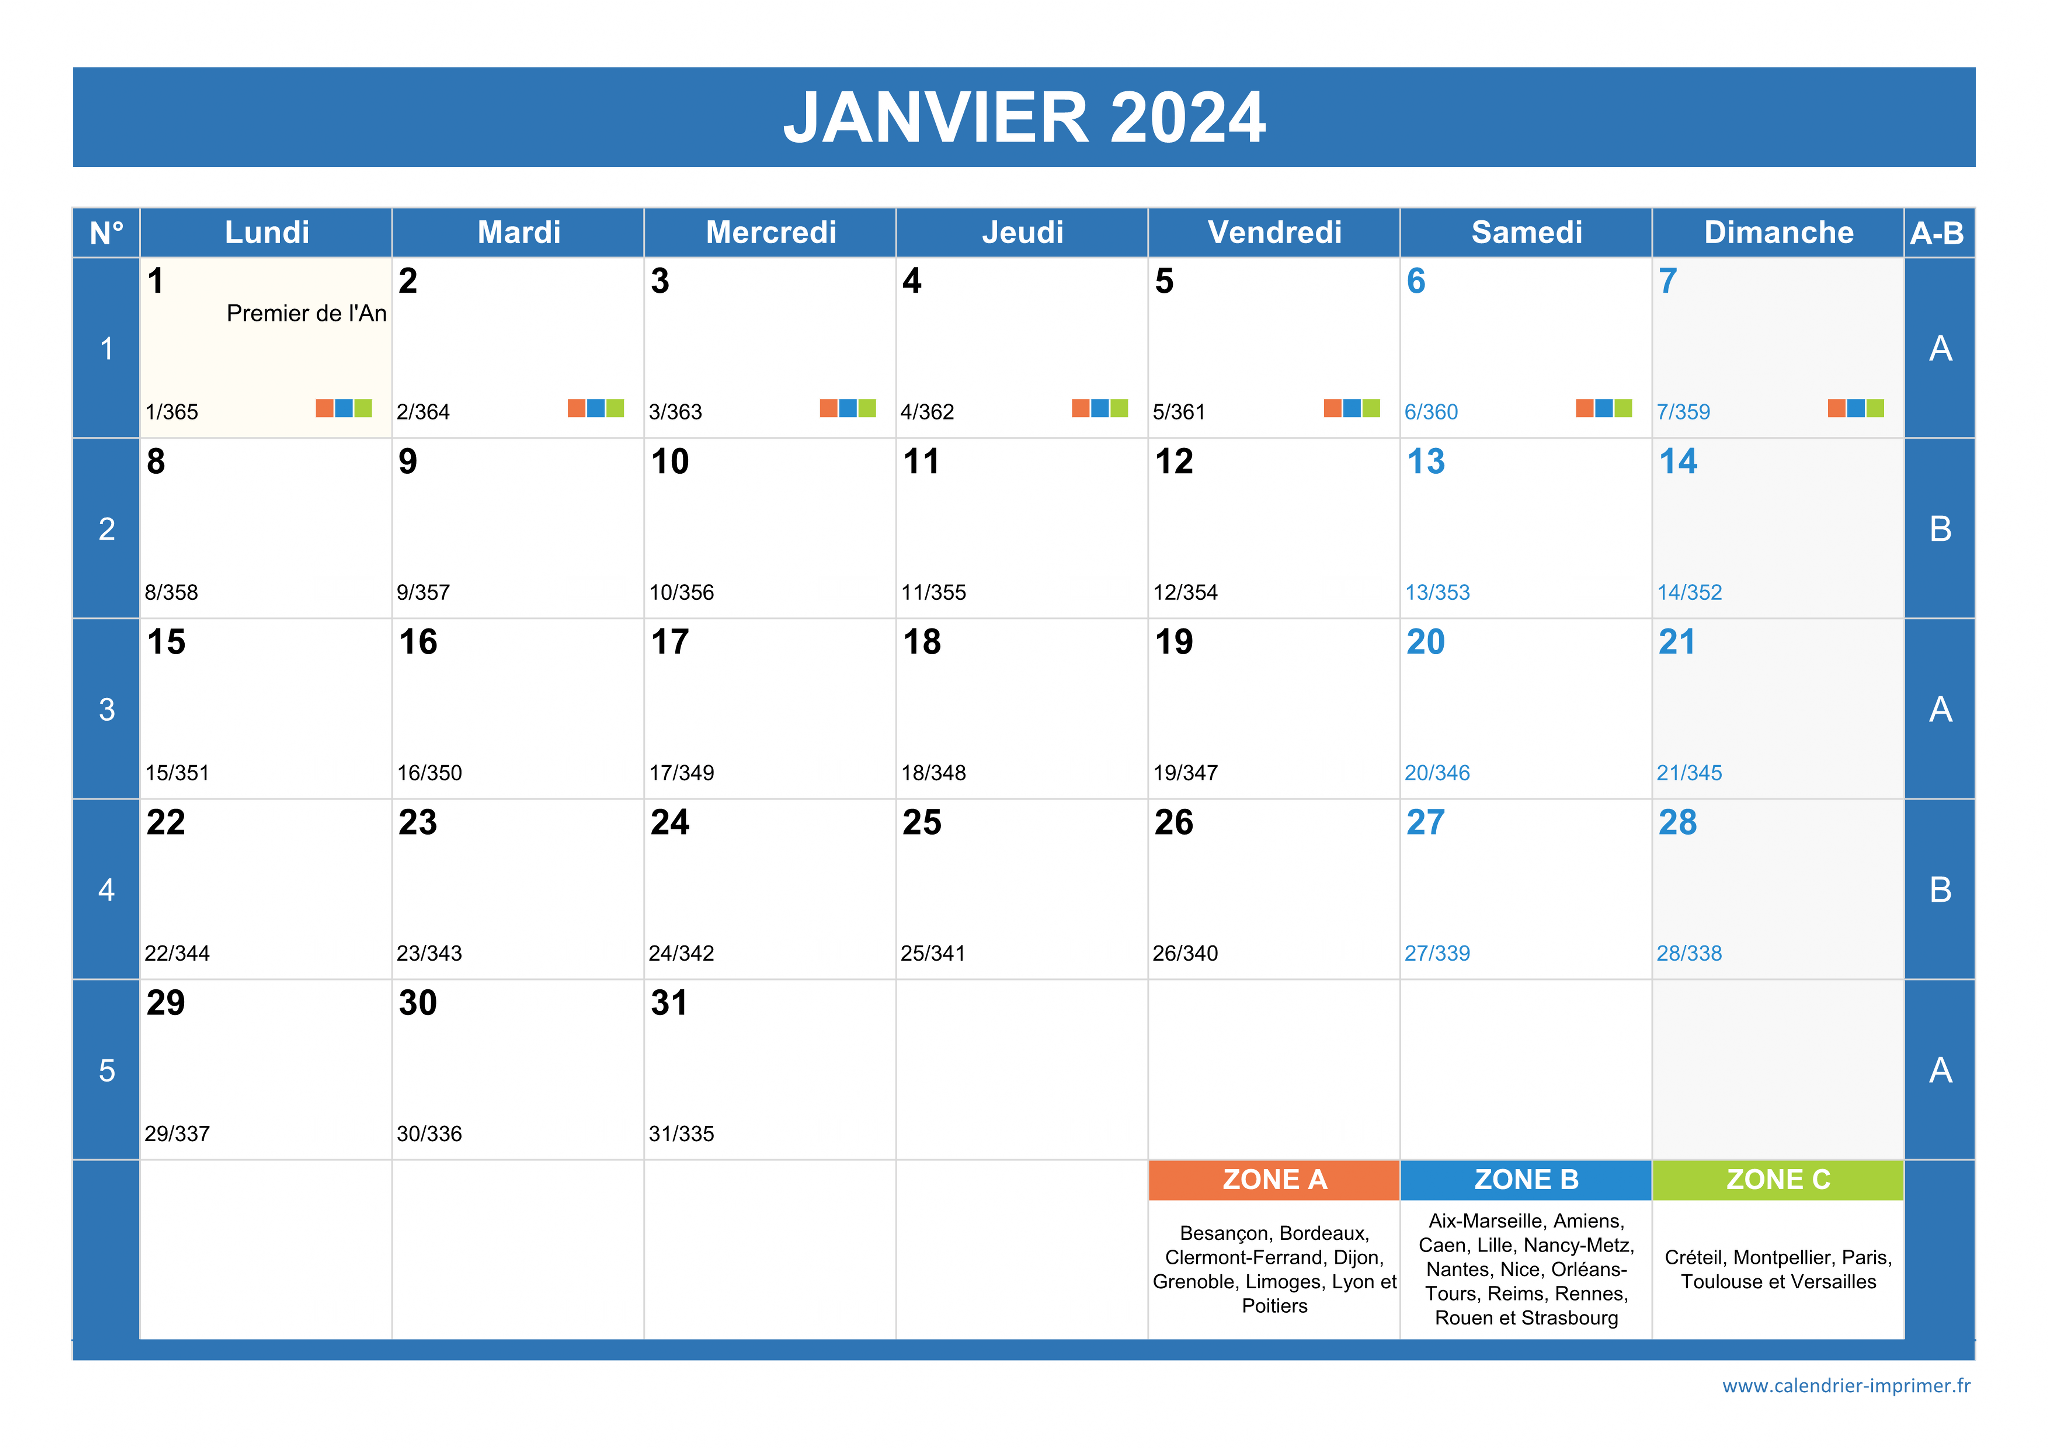 Calendrier 2024 : Vacances, Jours fériés, N° de semaine